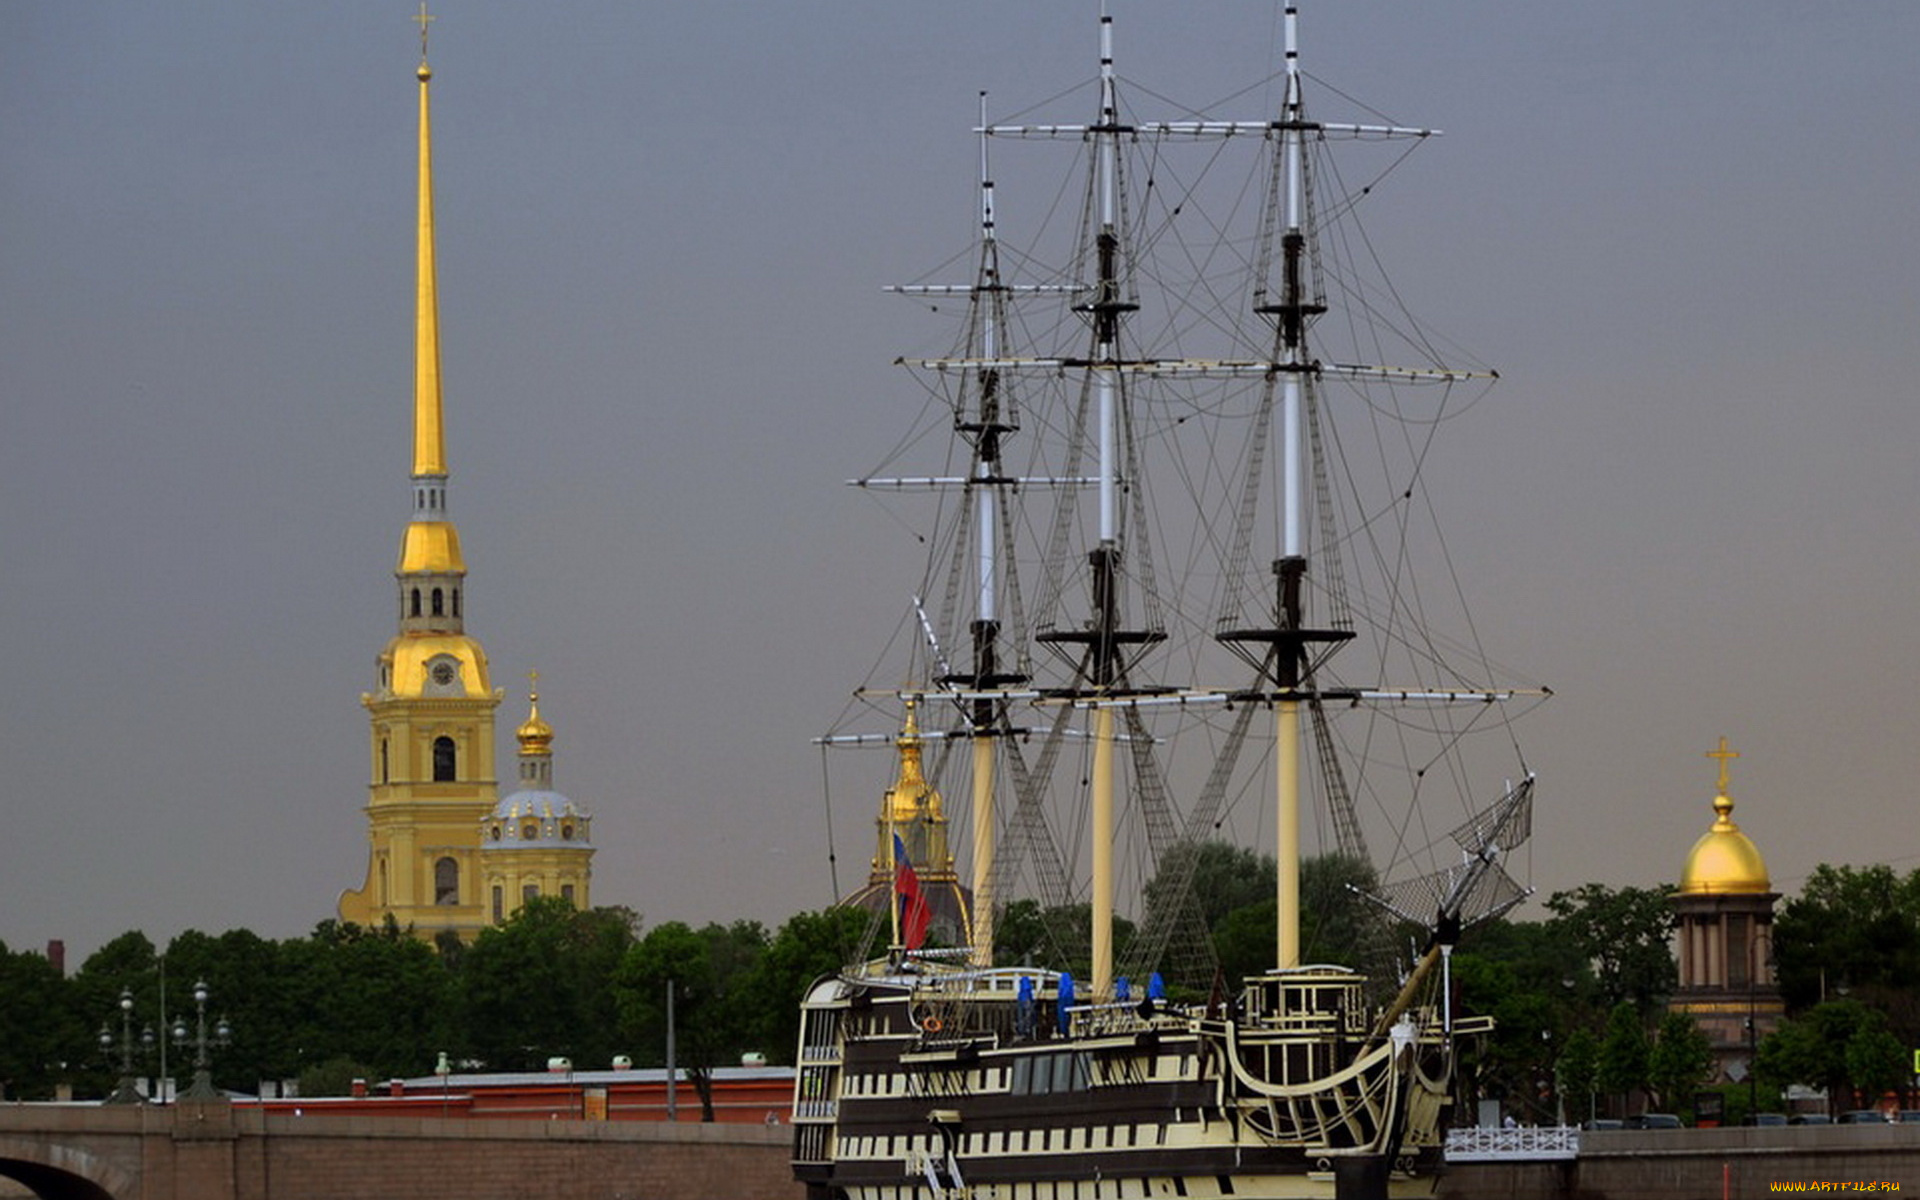 с-петербург, корабли, парусники, адмиралтейство, мост, фонари, деревья, здания, шпиль